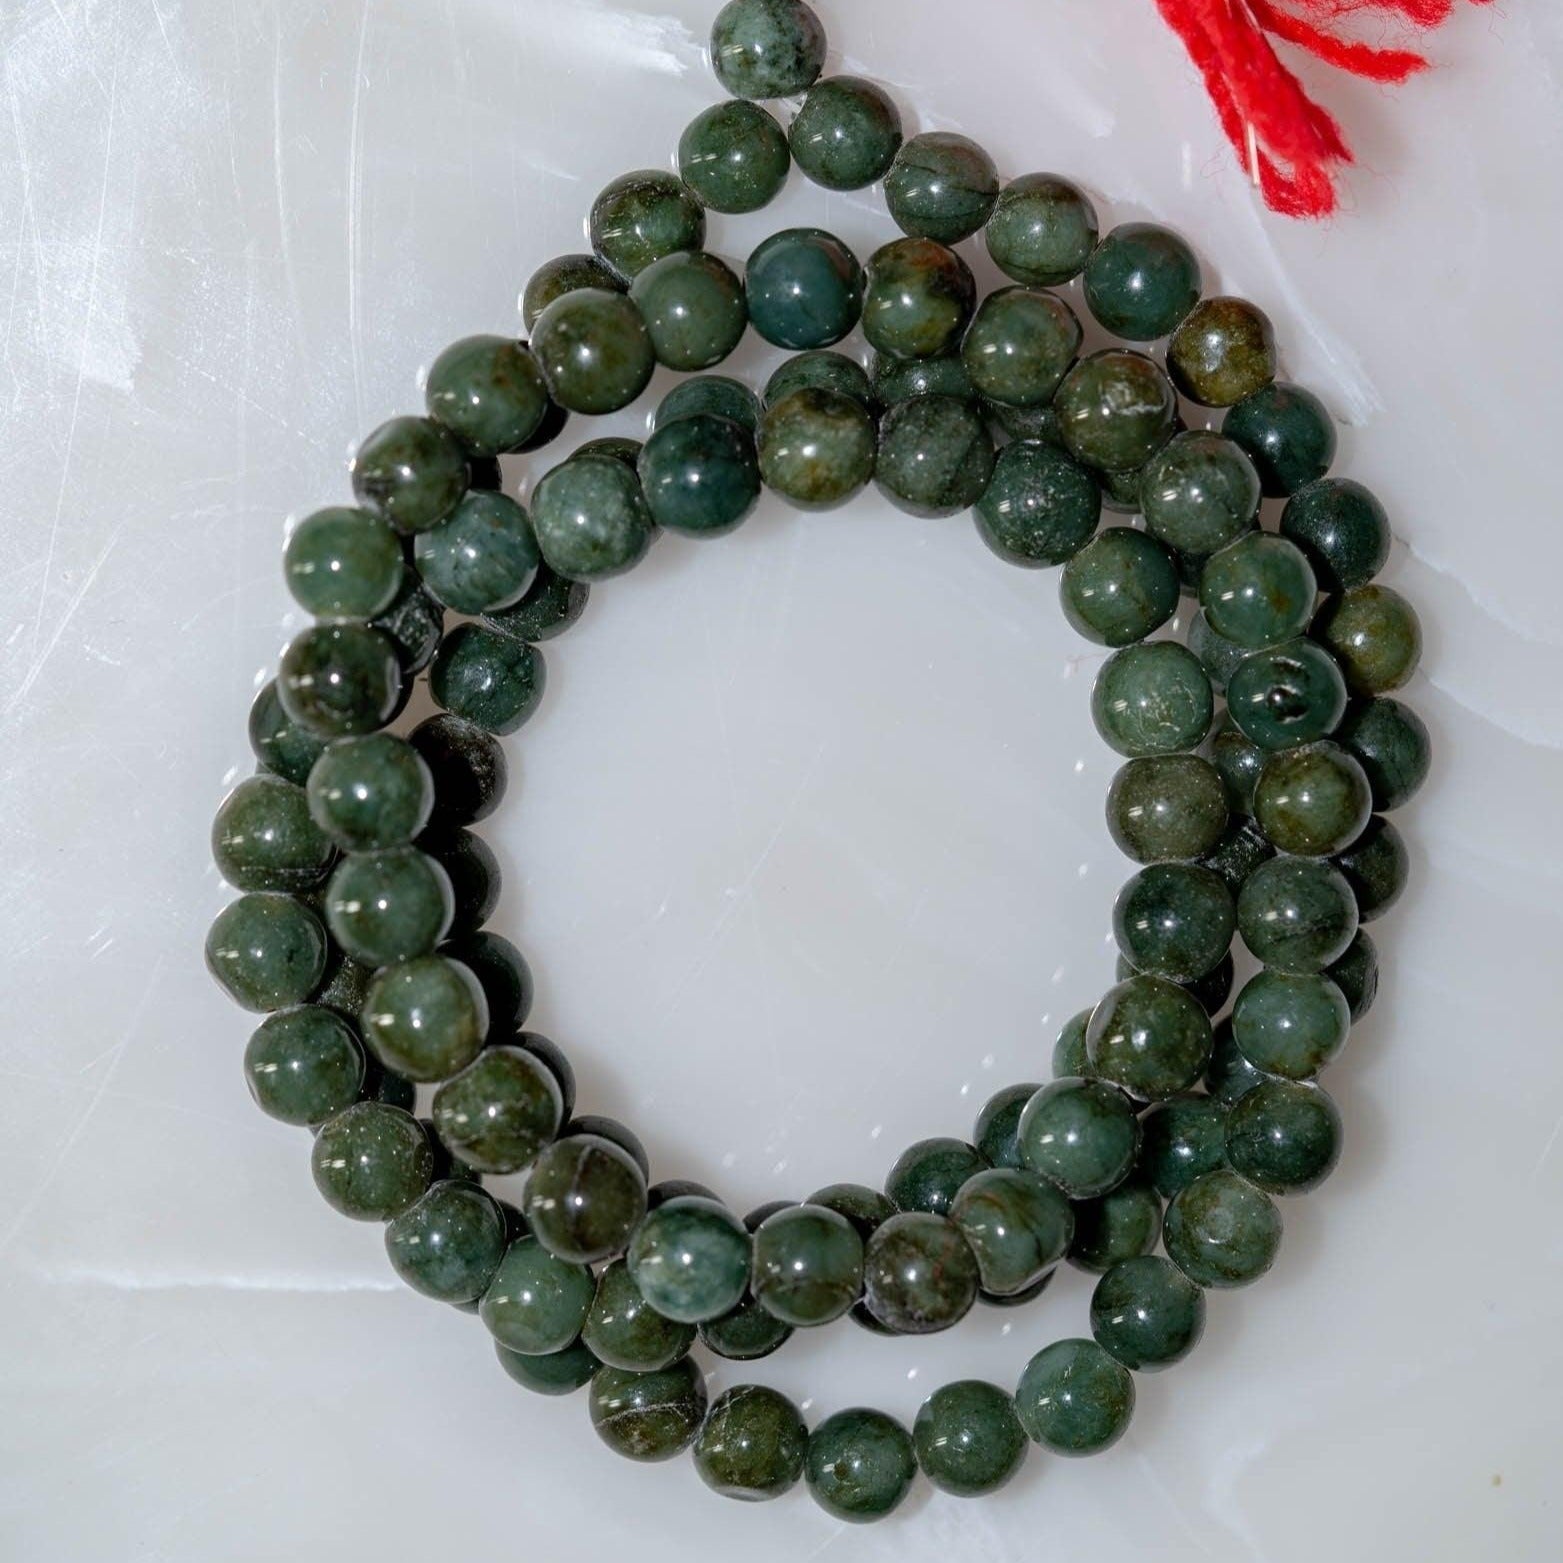 Japa Mala Beads - Shop Now